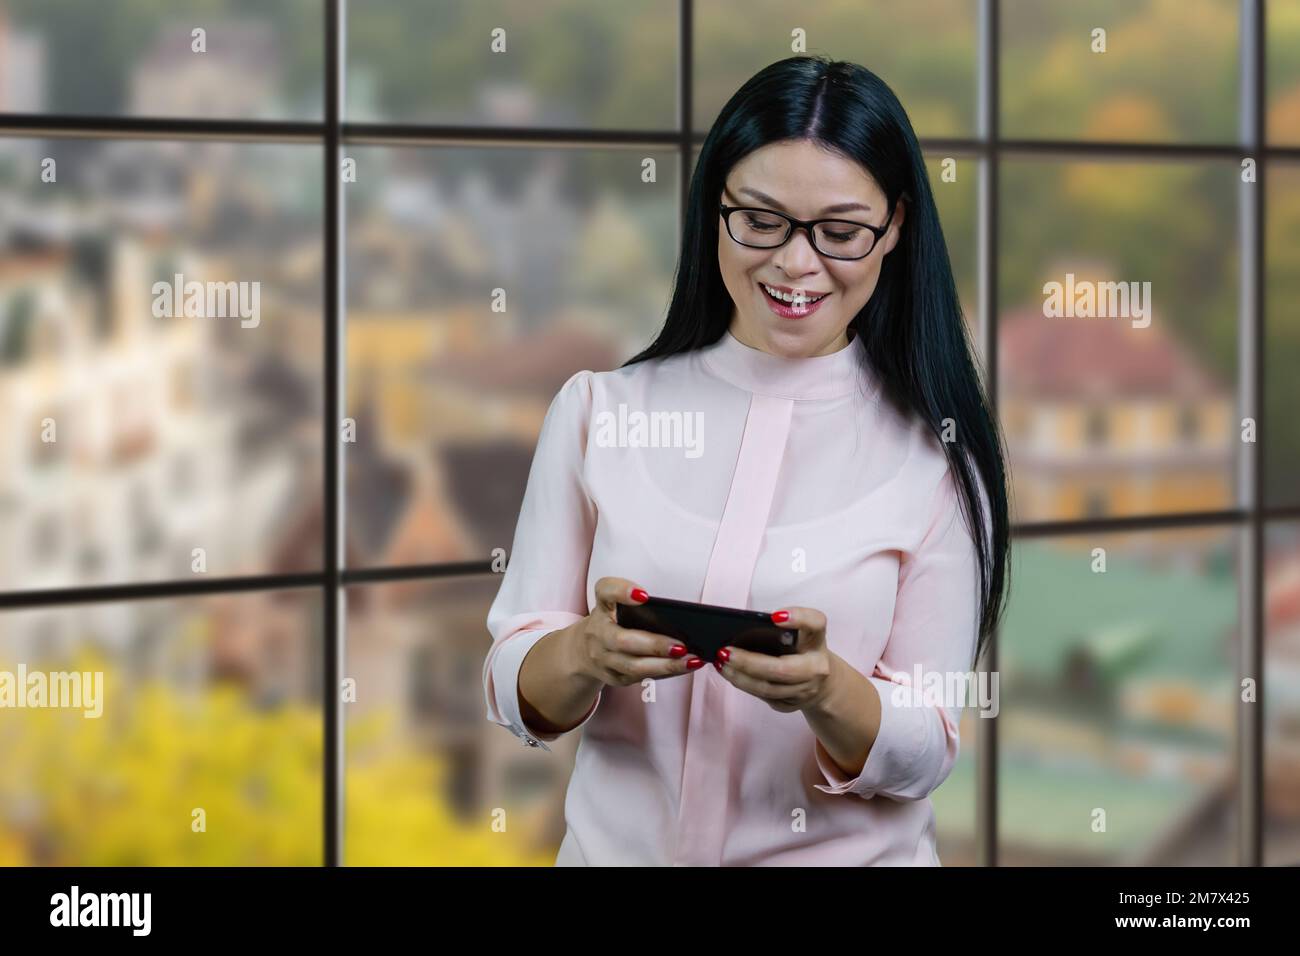 Glückliche asiatische Geschäftsfrau, die Videospiele auf ihrem Smartphone spielt. Karierte Fenster mit unscharfem Hintergrund. Stockfoto